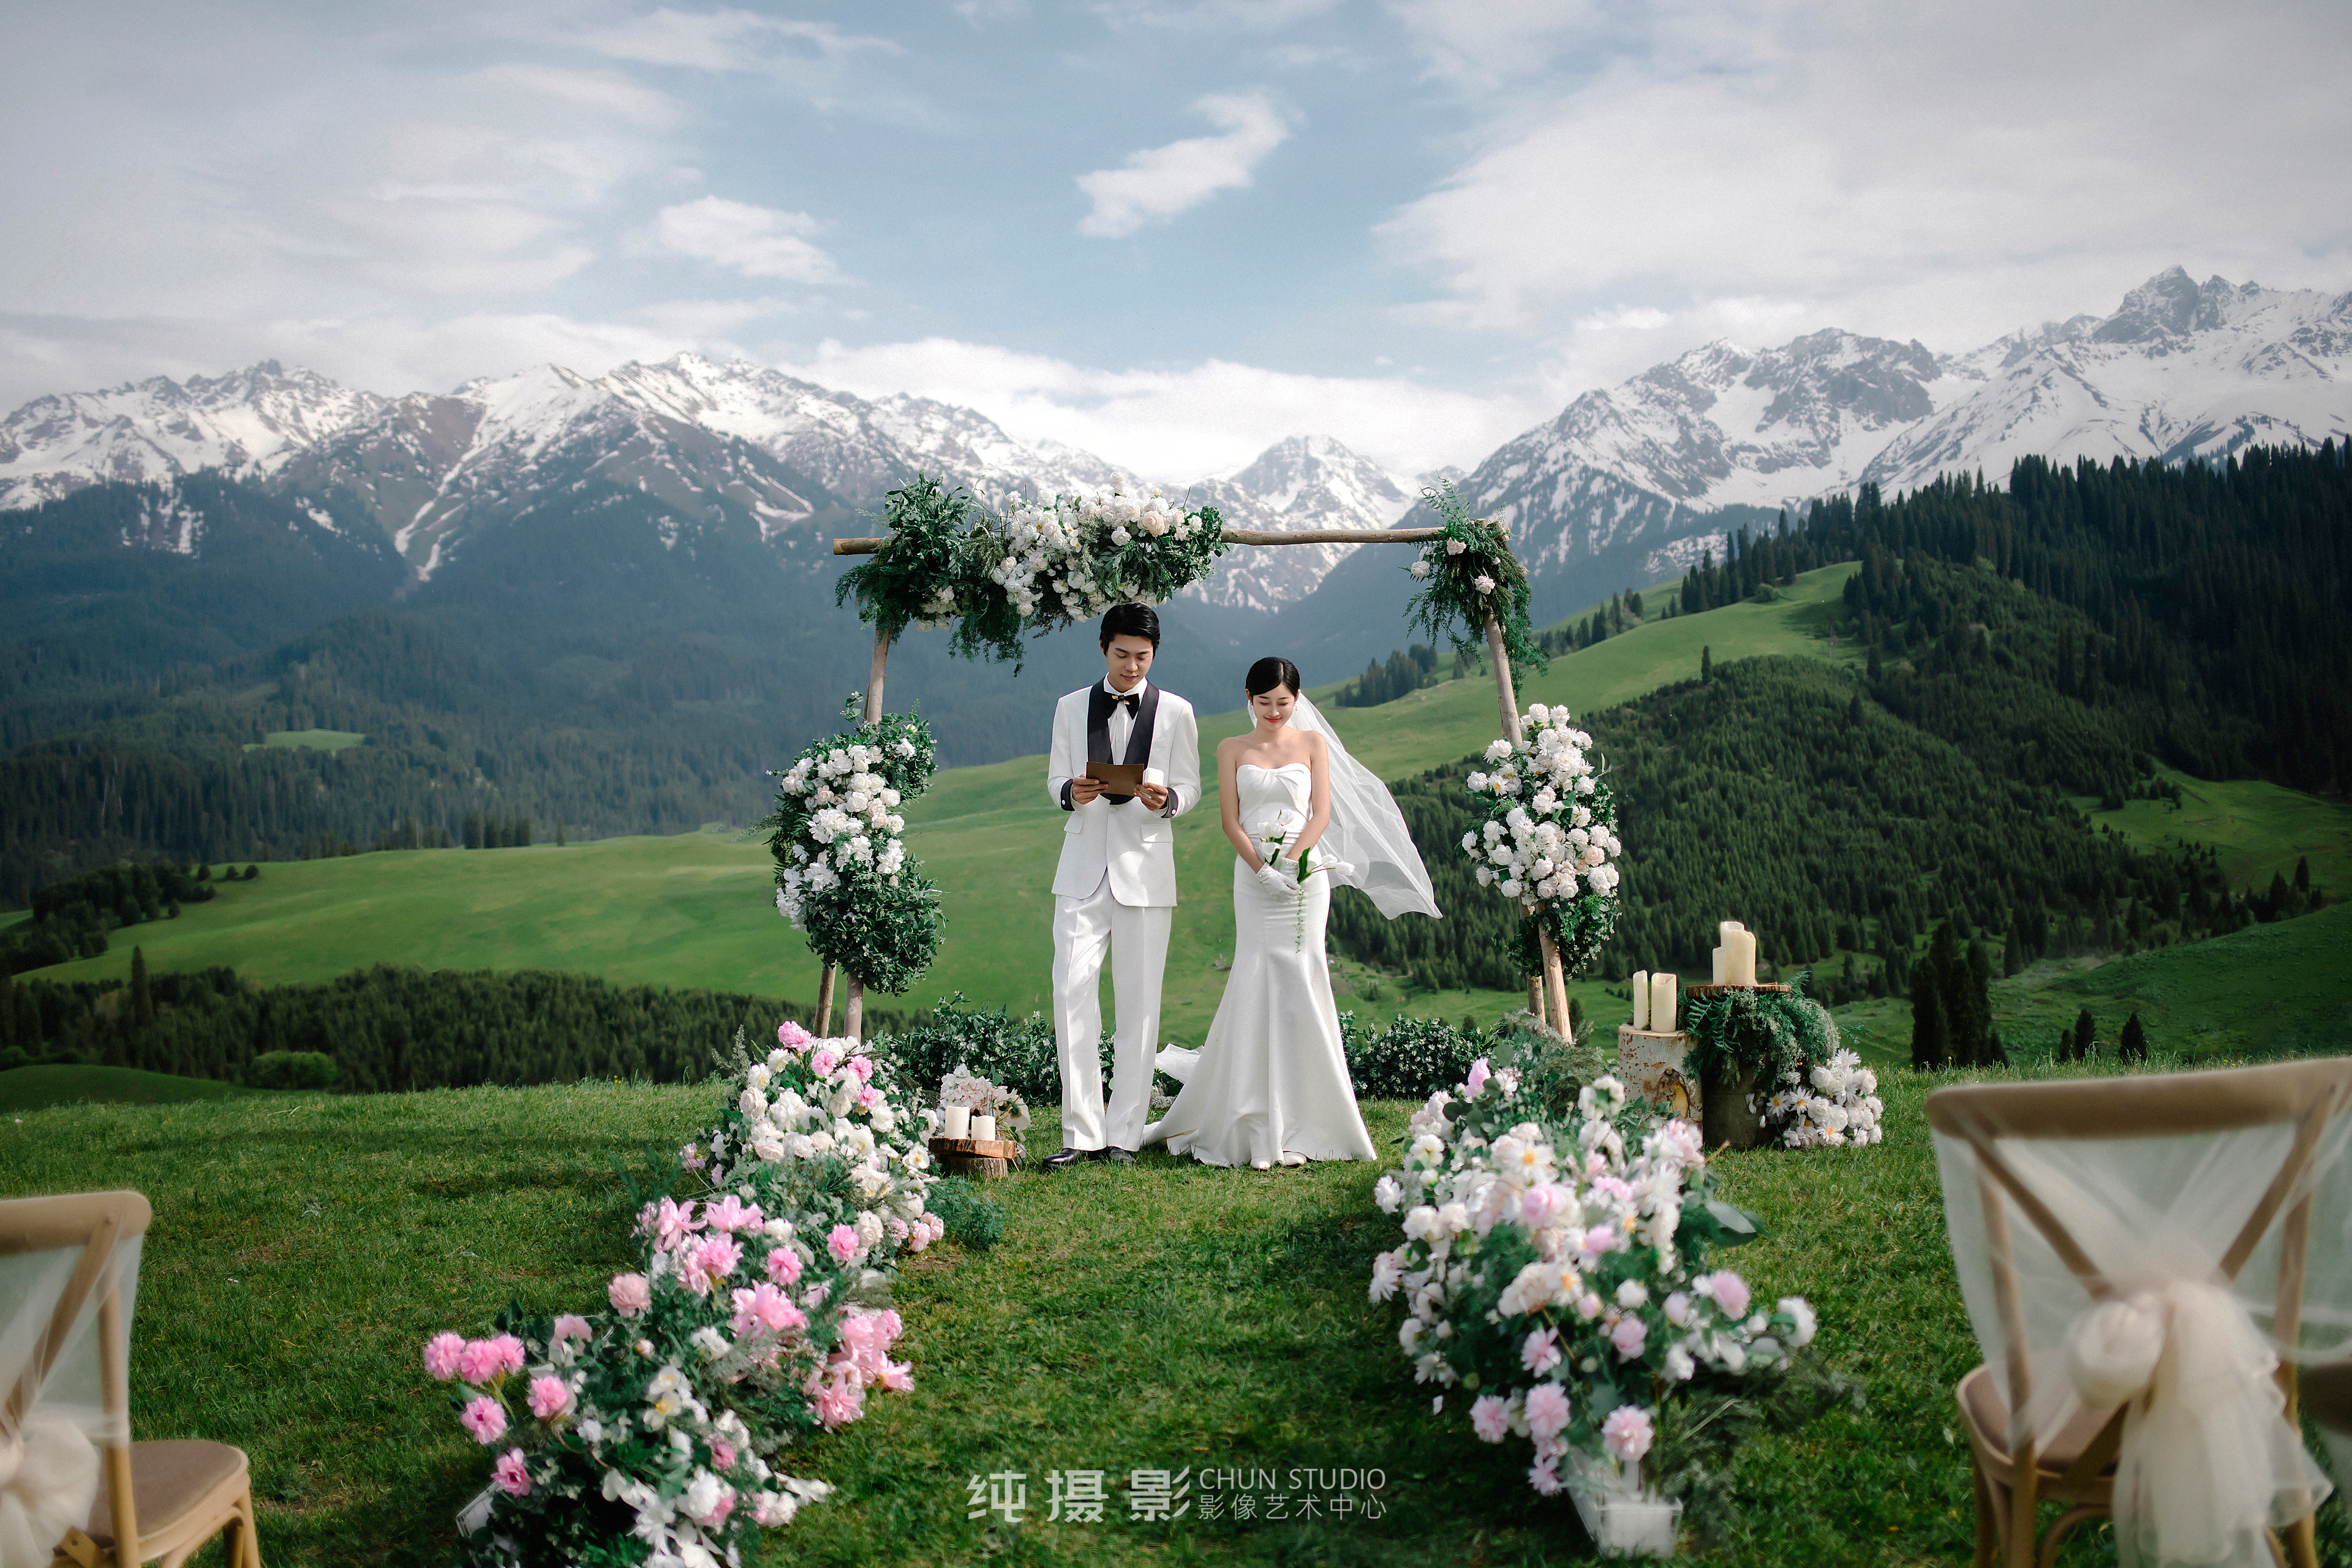 【恰西目的地婚礼】森林丨草原丨雪山丨婚前影像